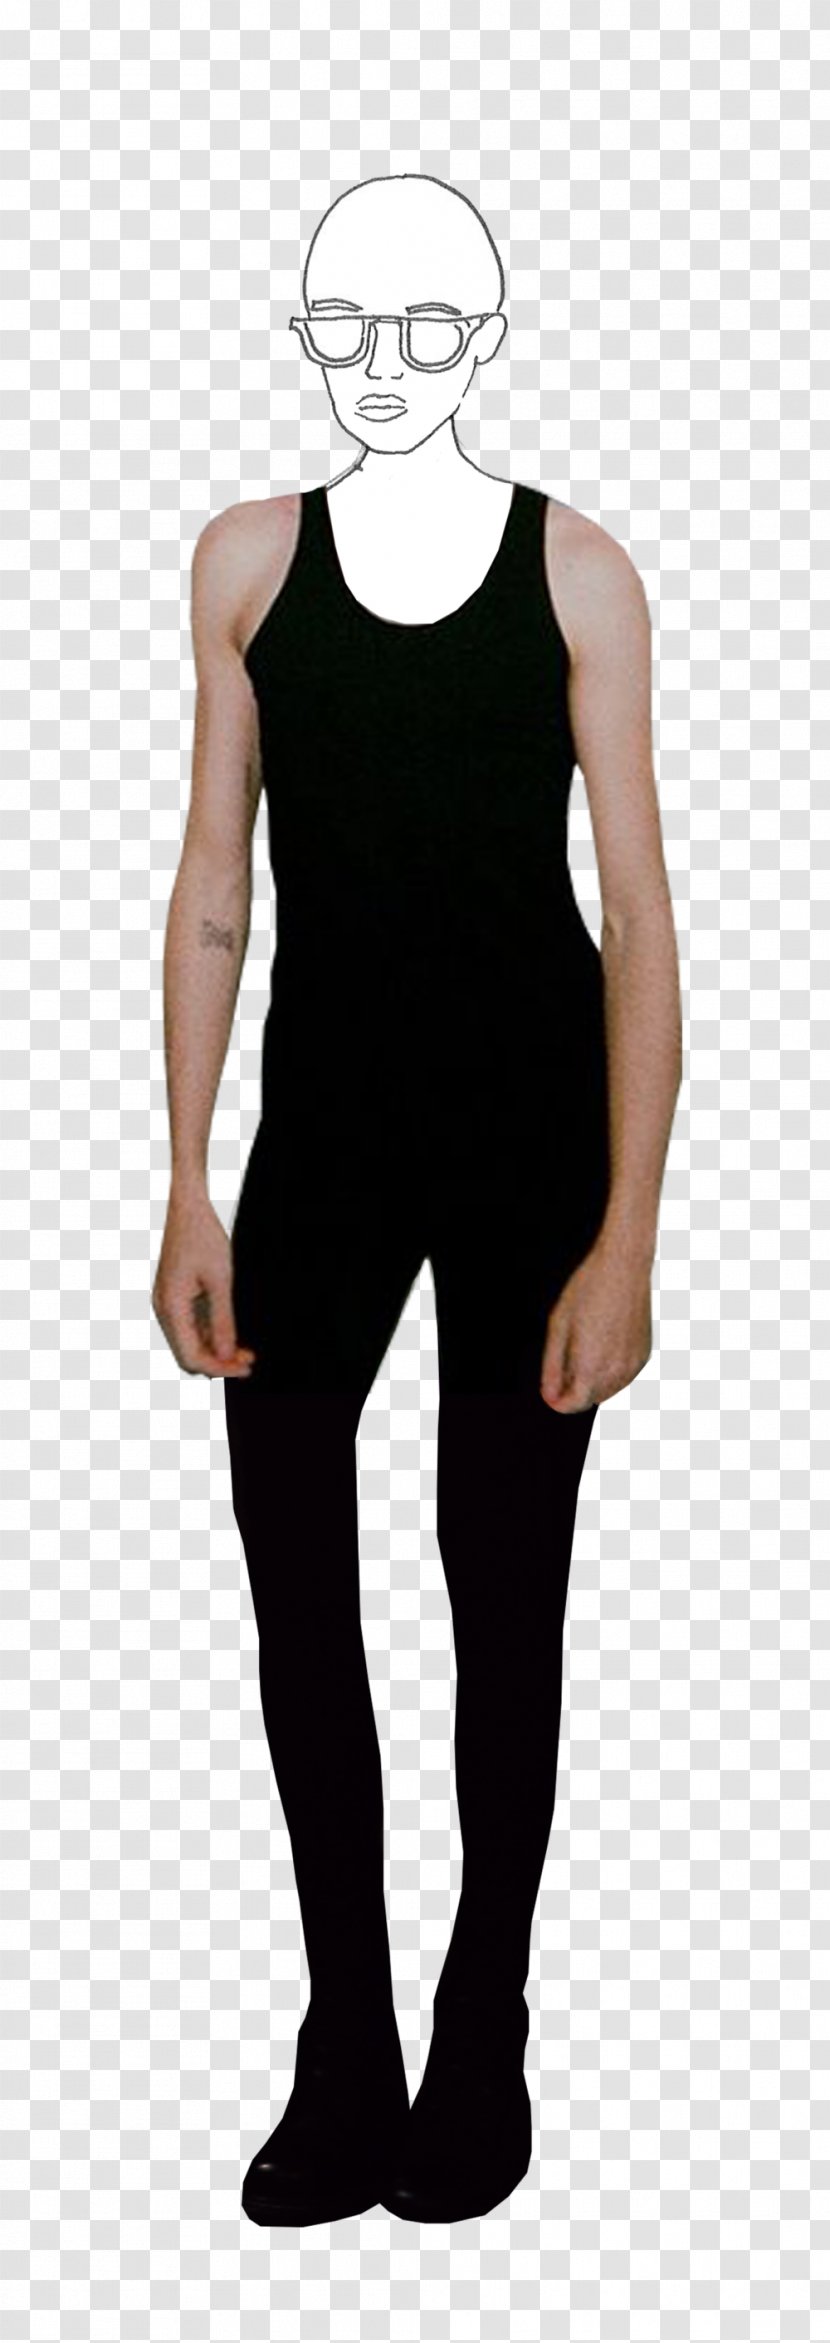 T-shirt Sleeveless Shirt Shoulder Sportswear - Sleeve Transparent PNG